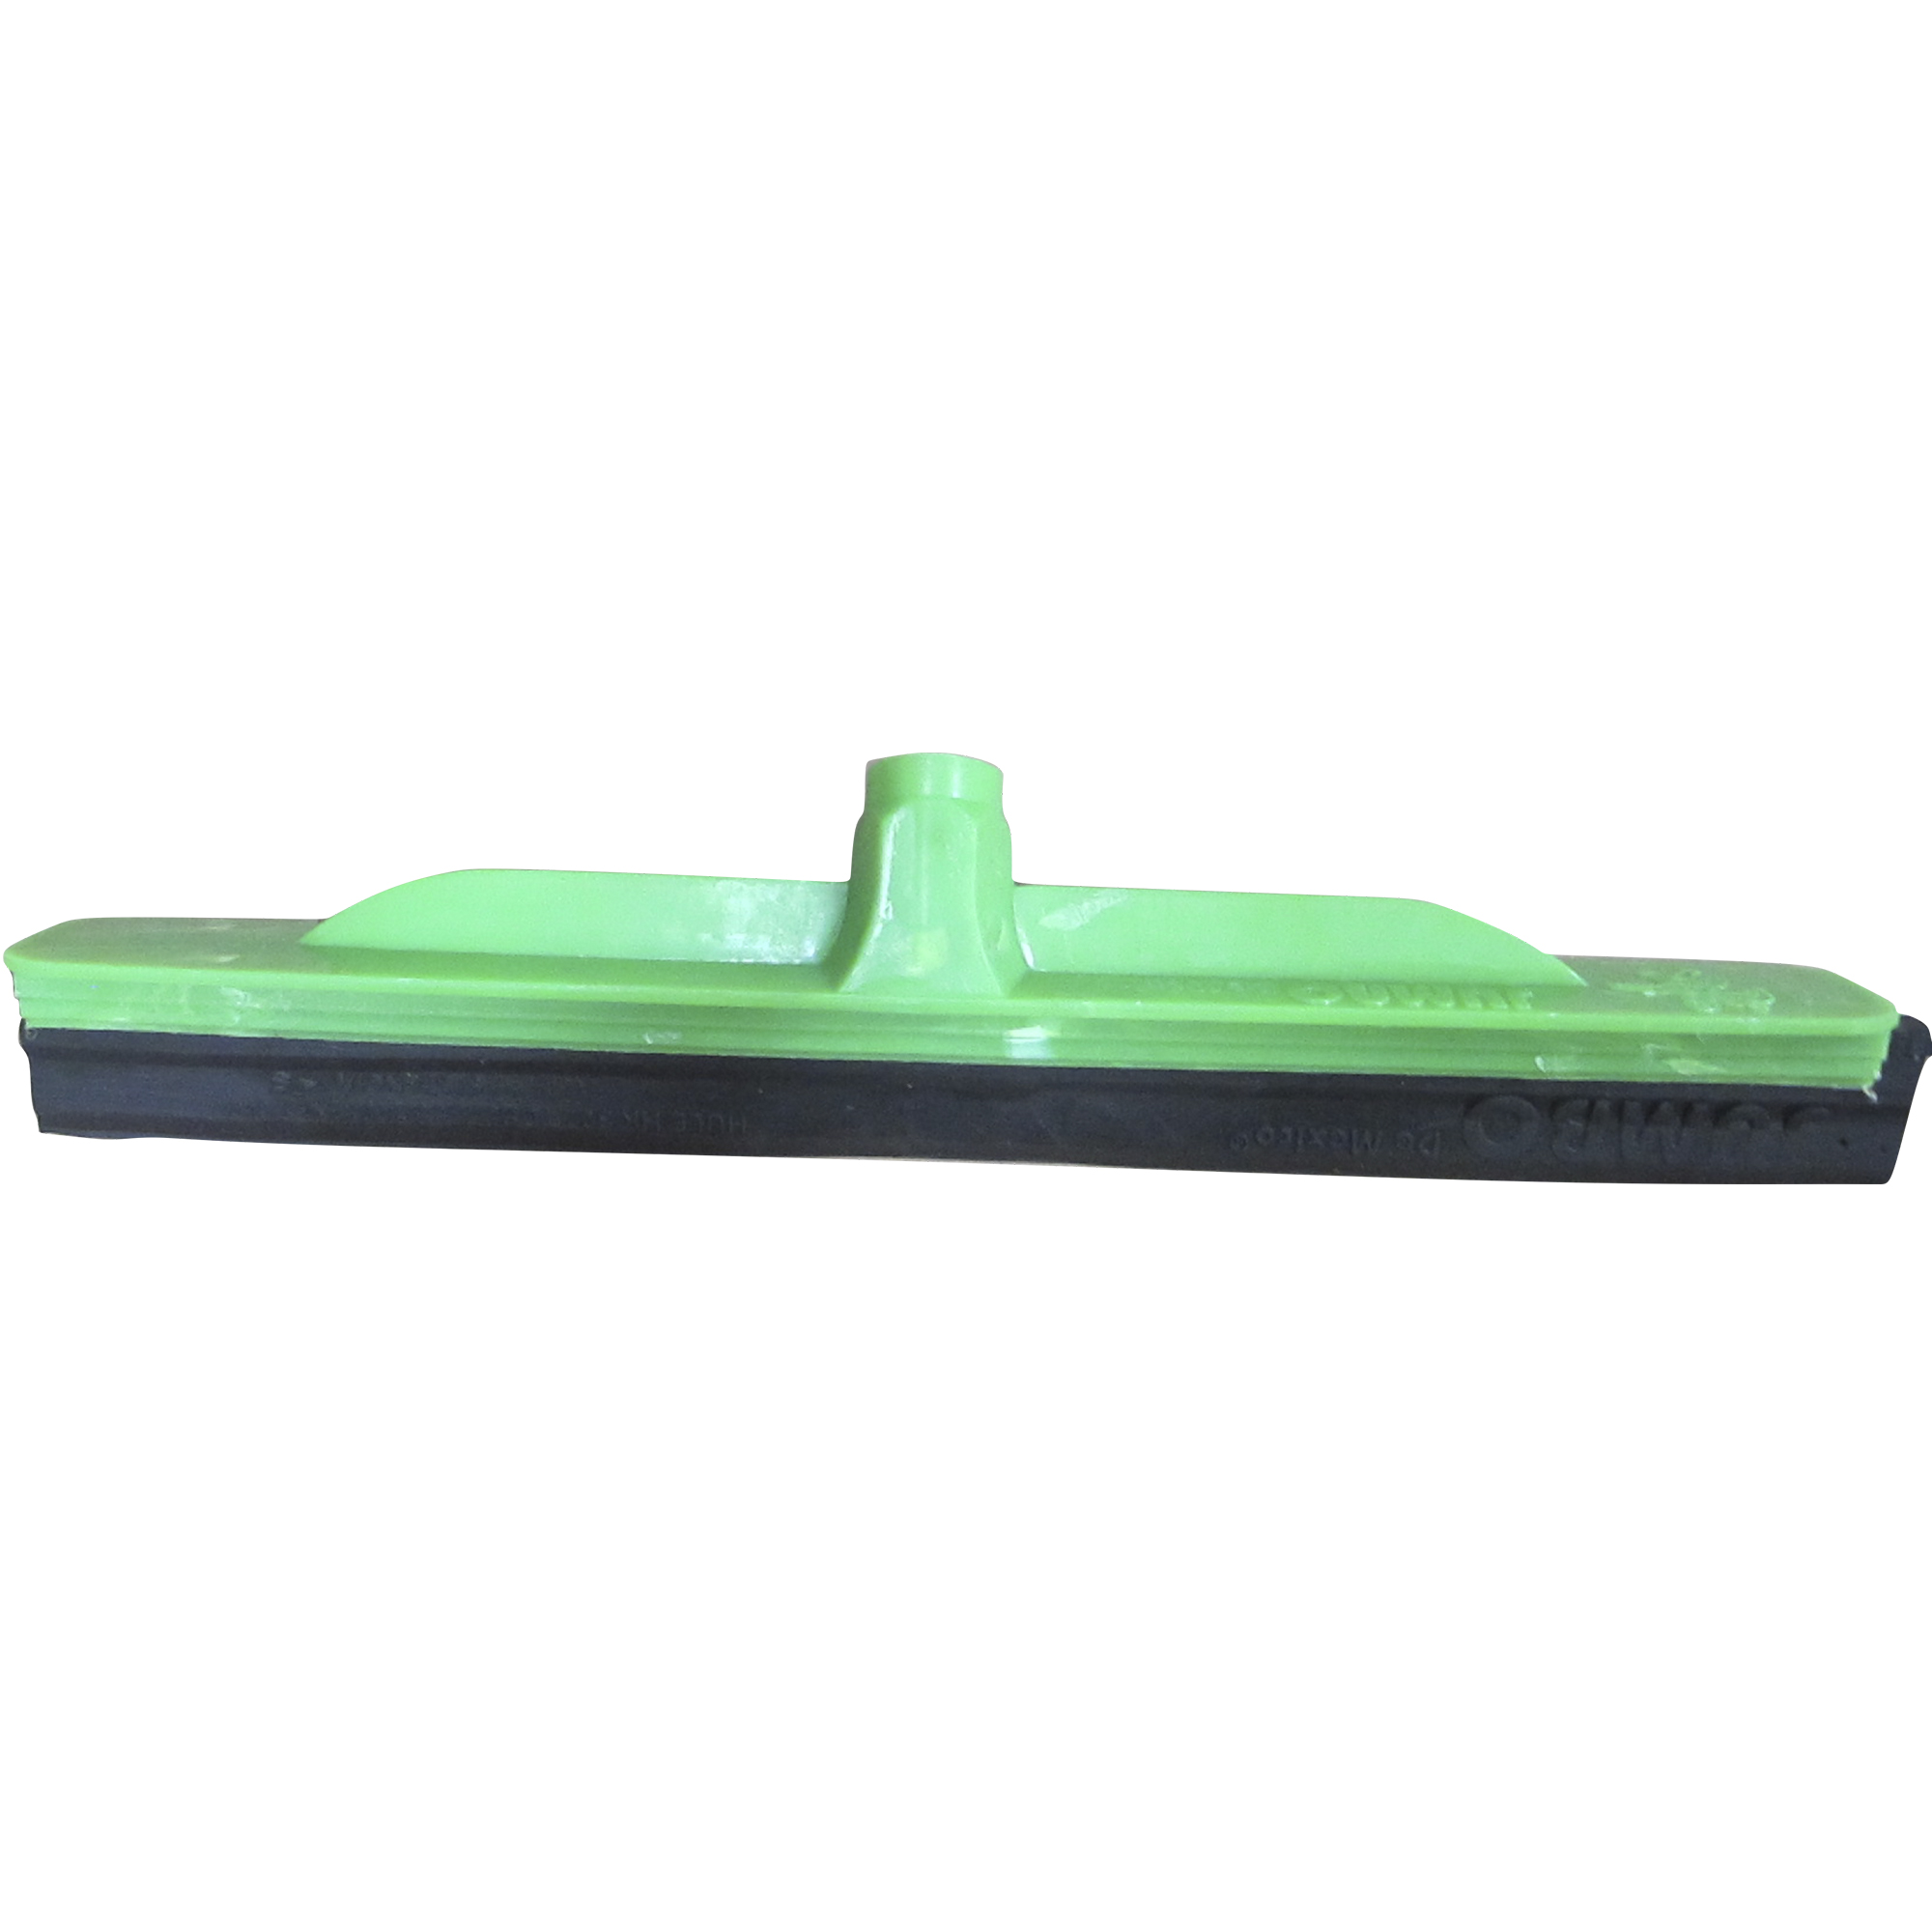 Jalador de goma y estructura de plástico color verde con 40 centímetros de longitud, no incluye bastón